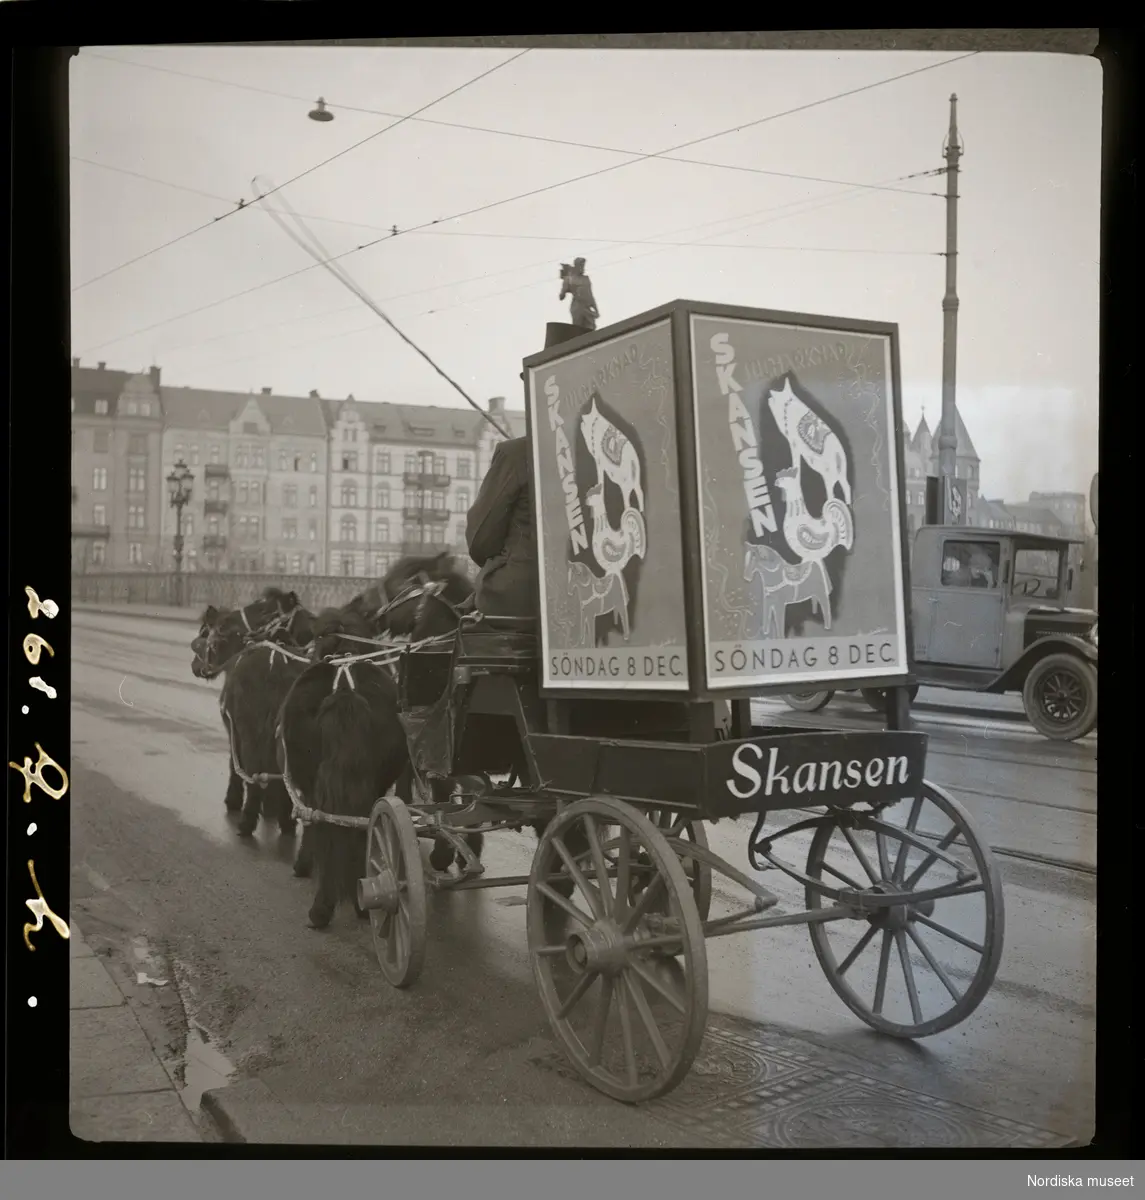 Vagn dragen av schetlandsponnys över Djurgårdsbron. Reklam för Skansen julmarknad söndag 8 dec.